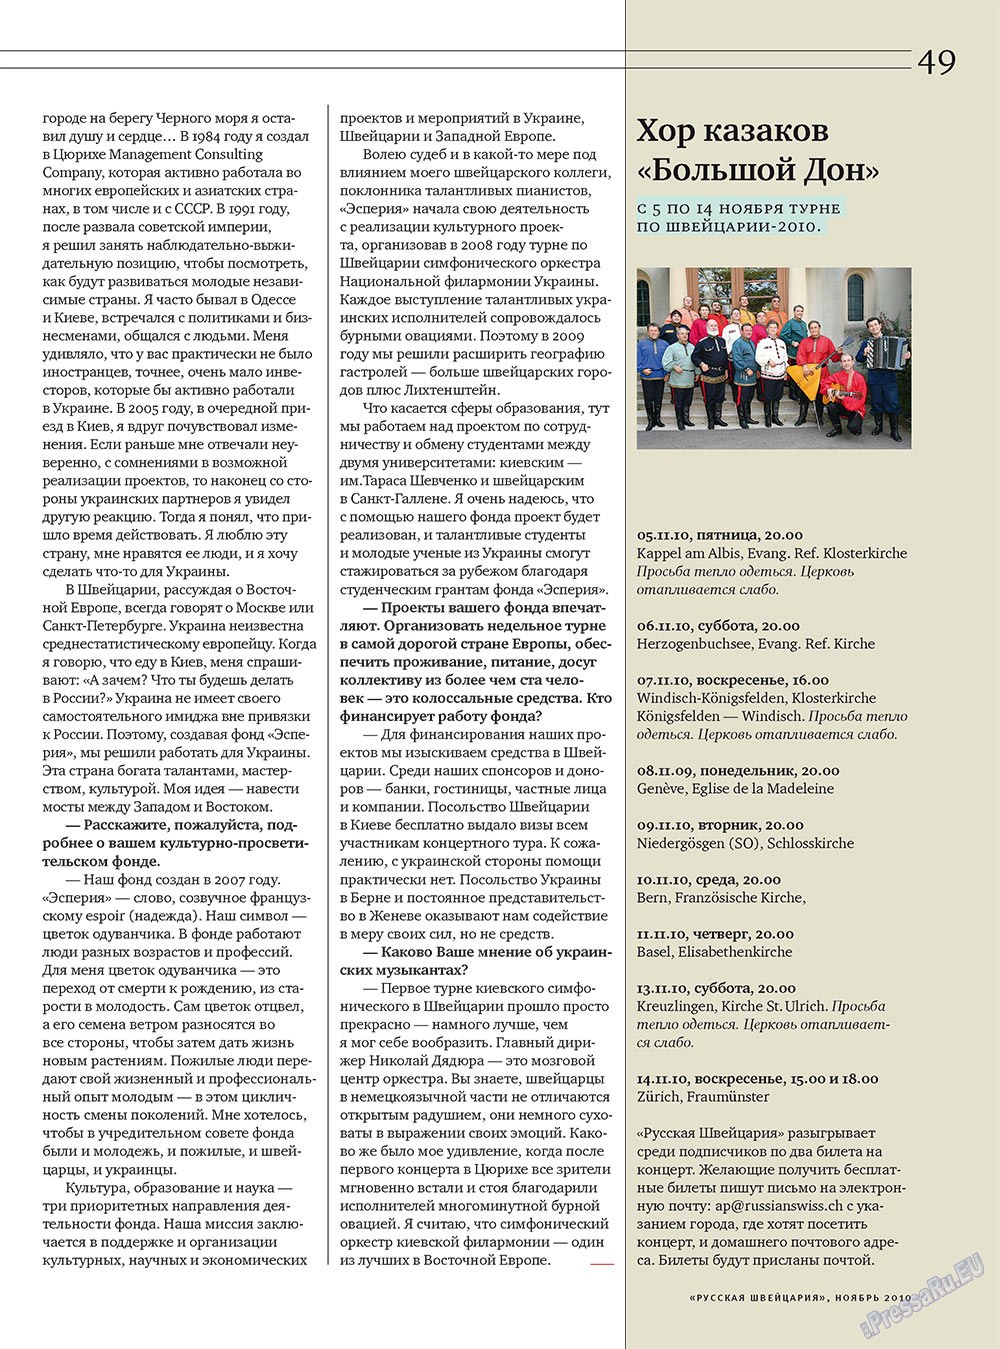 Russkaja Schweizaria (Zeitschrift). 2010 Jahr, Ausgabe 9, Seite 49